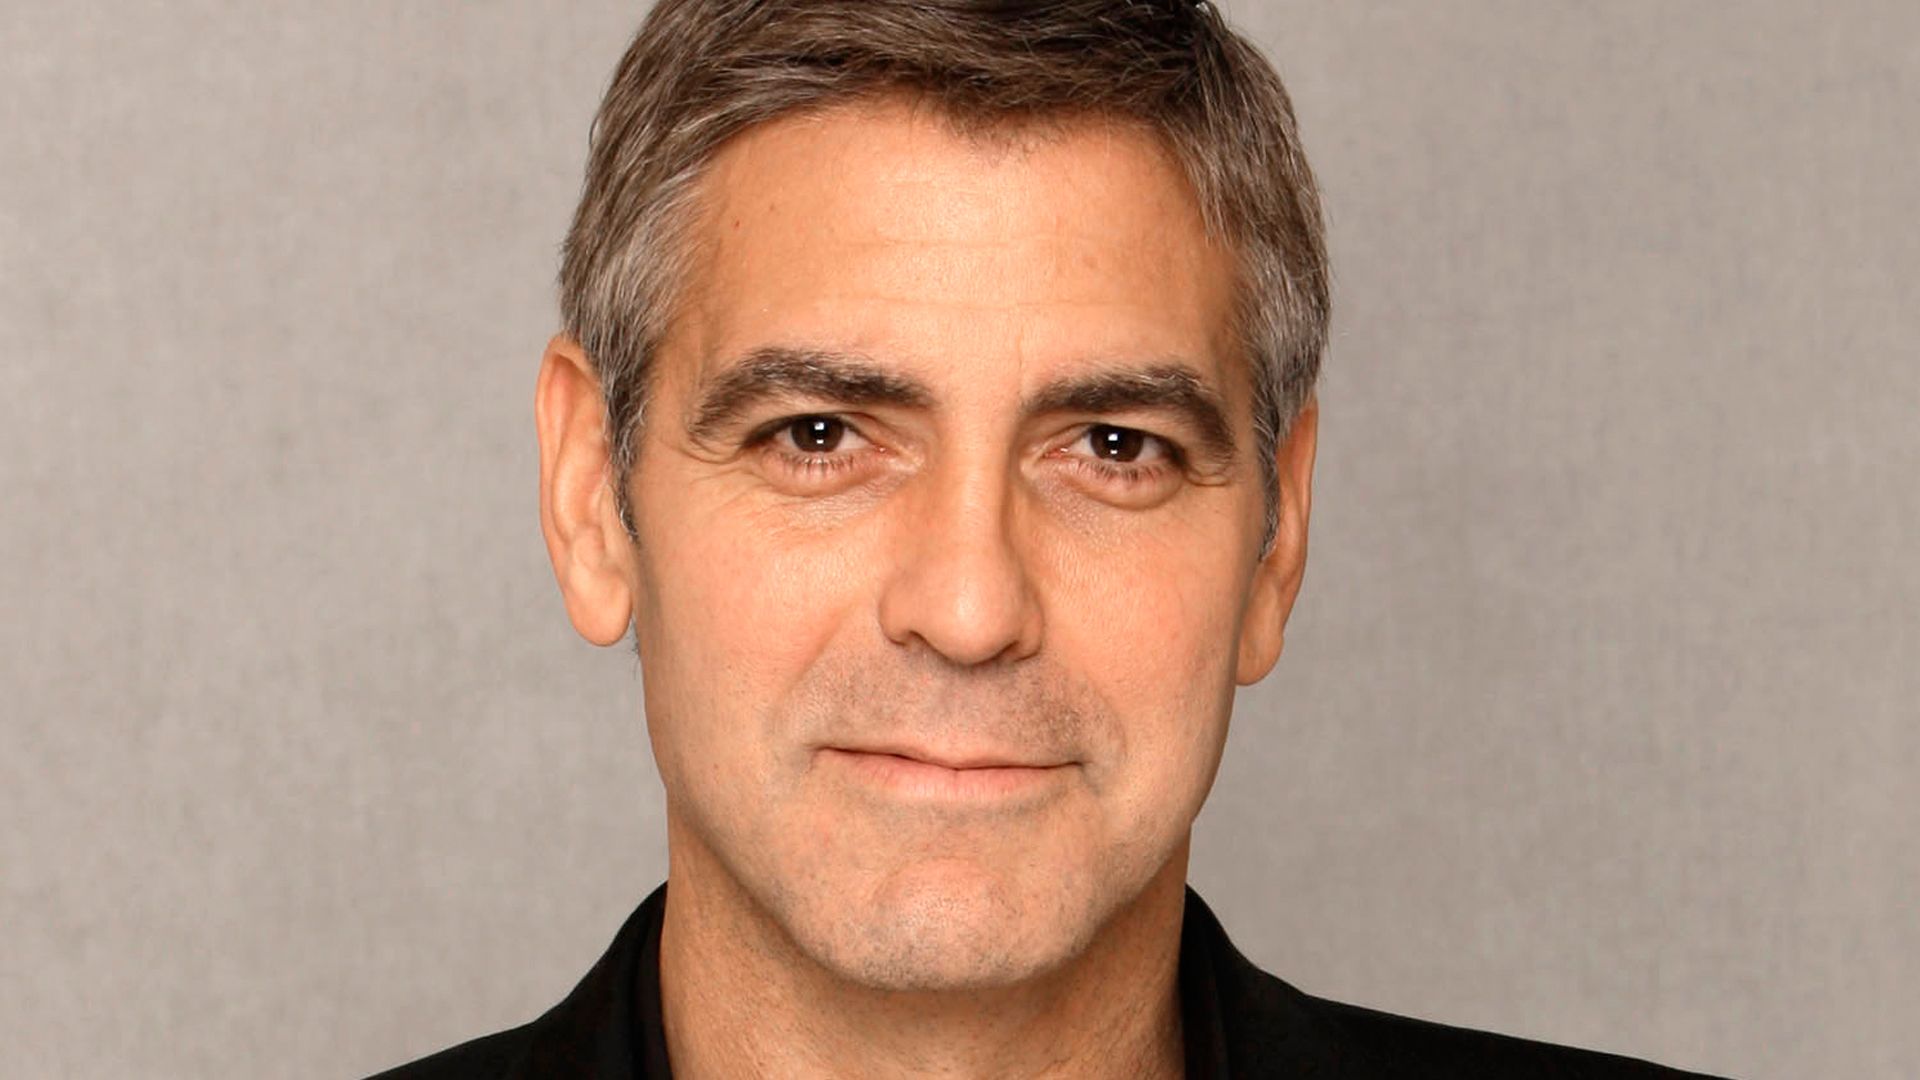 Perché il viso di George Clooney è la bellezza perfetta